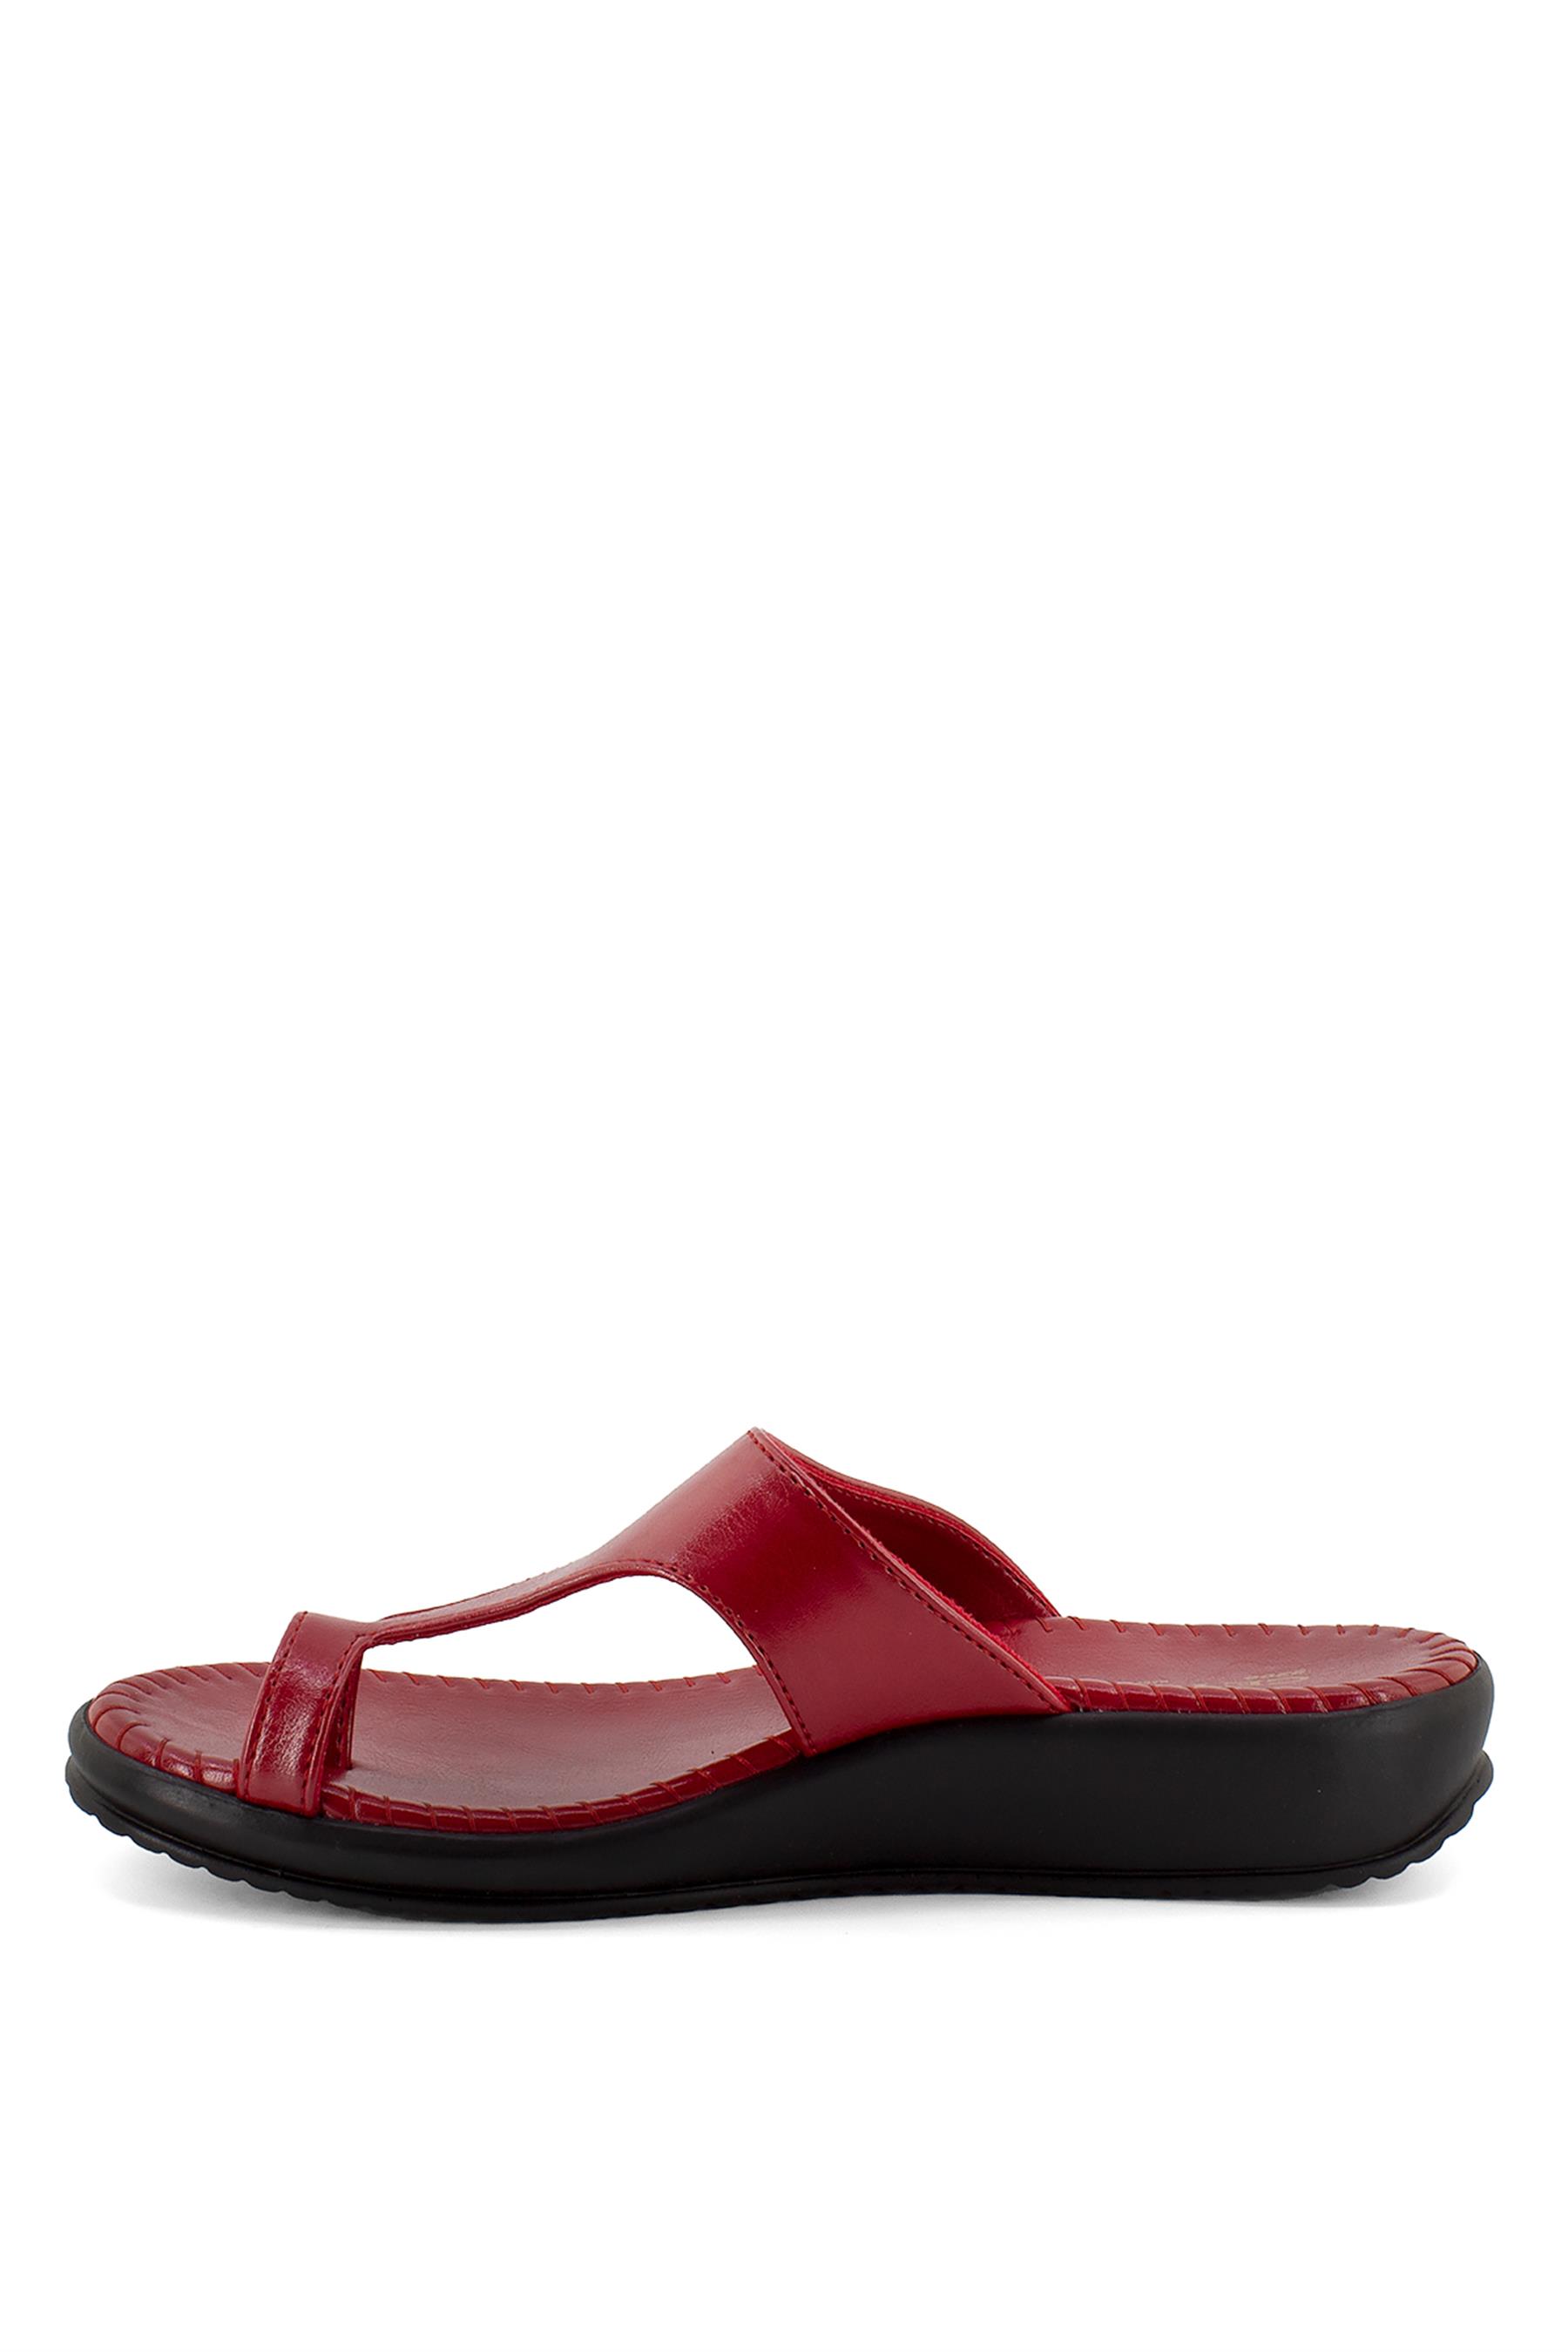 Ceyo 9200-2 Kadın Terlik Kırmızı - Ayakkabı Fuarı Elit